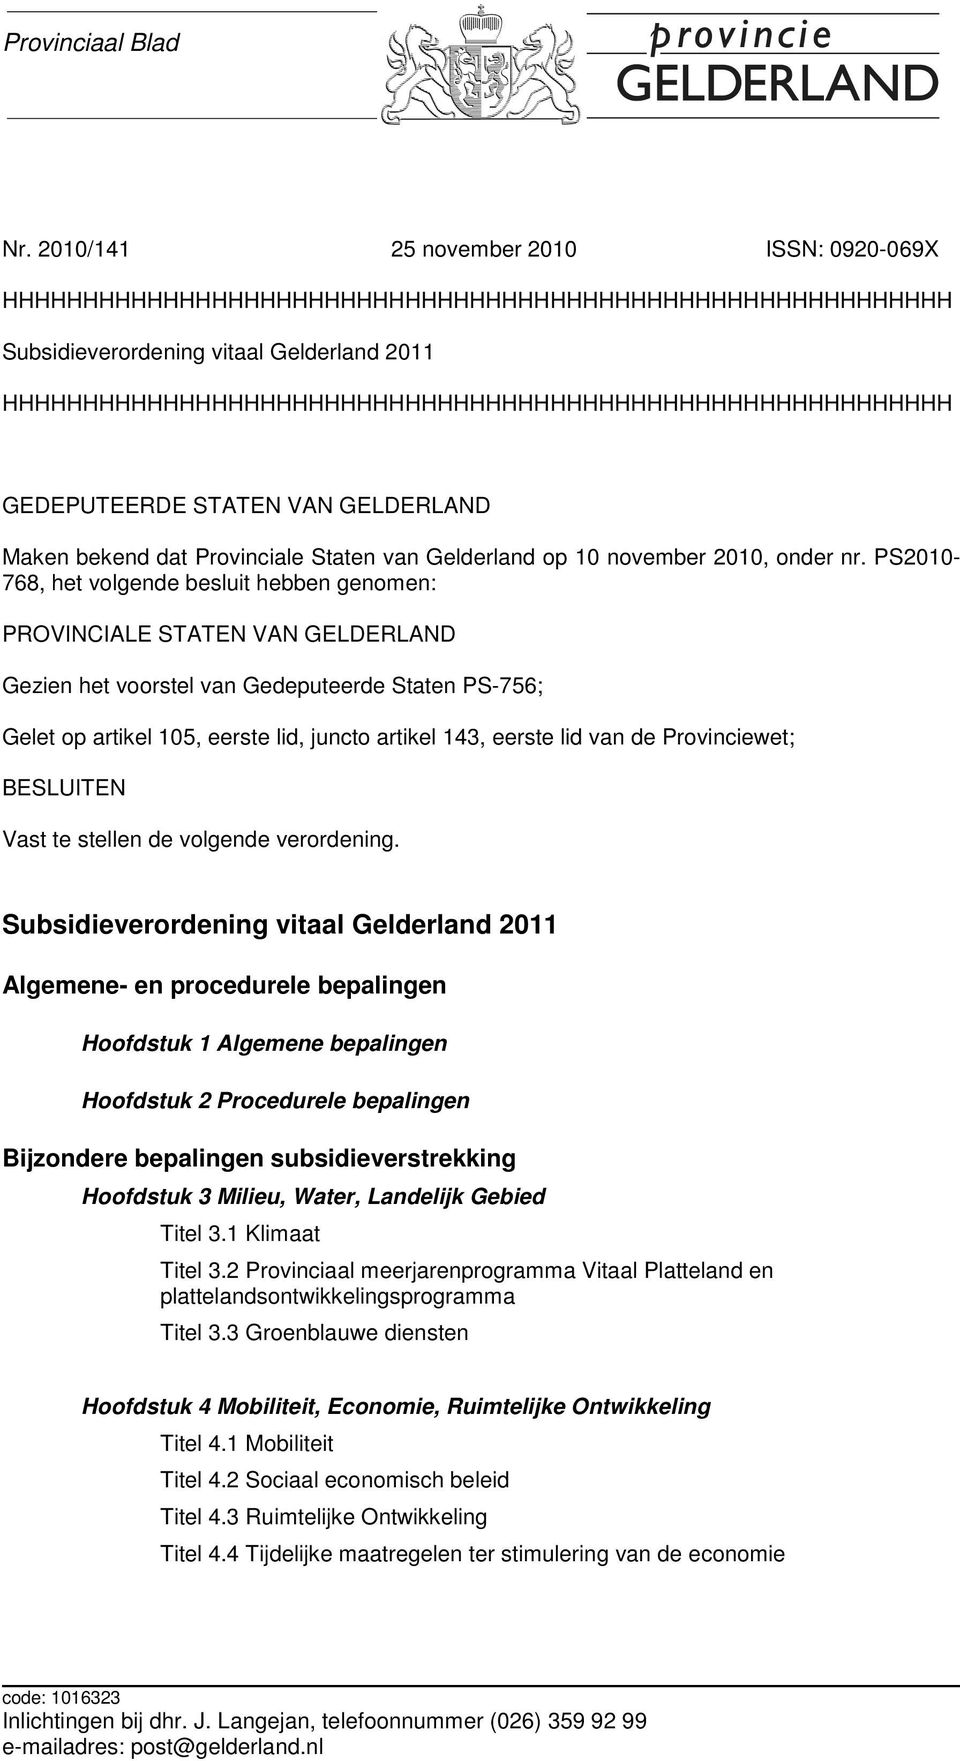 HHHHHHHHHHHHHHHHHHHHHHHHHHHHHHHHHHHHHHHHHHHHHHHHHHHHHHHHHHH GEDEPUTEERDE STATEN VAN GELDERLAND Maken bekend dat Provinciale Staten van Gelderland op 10 november 2010, onder nr.